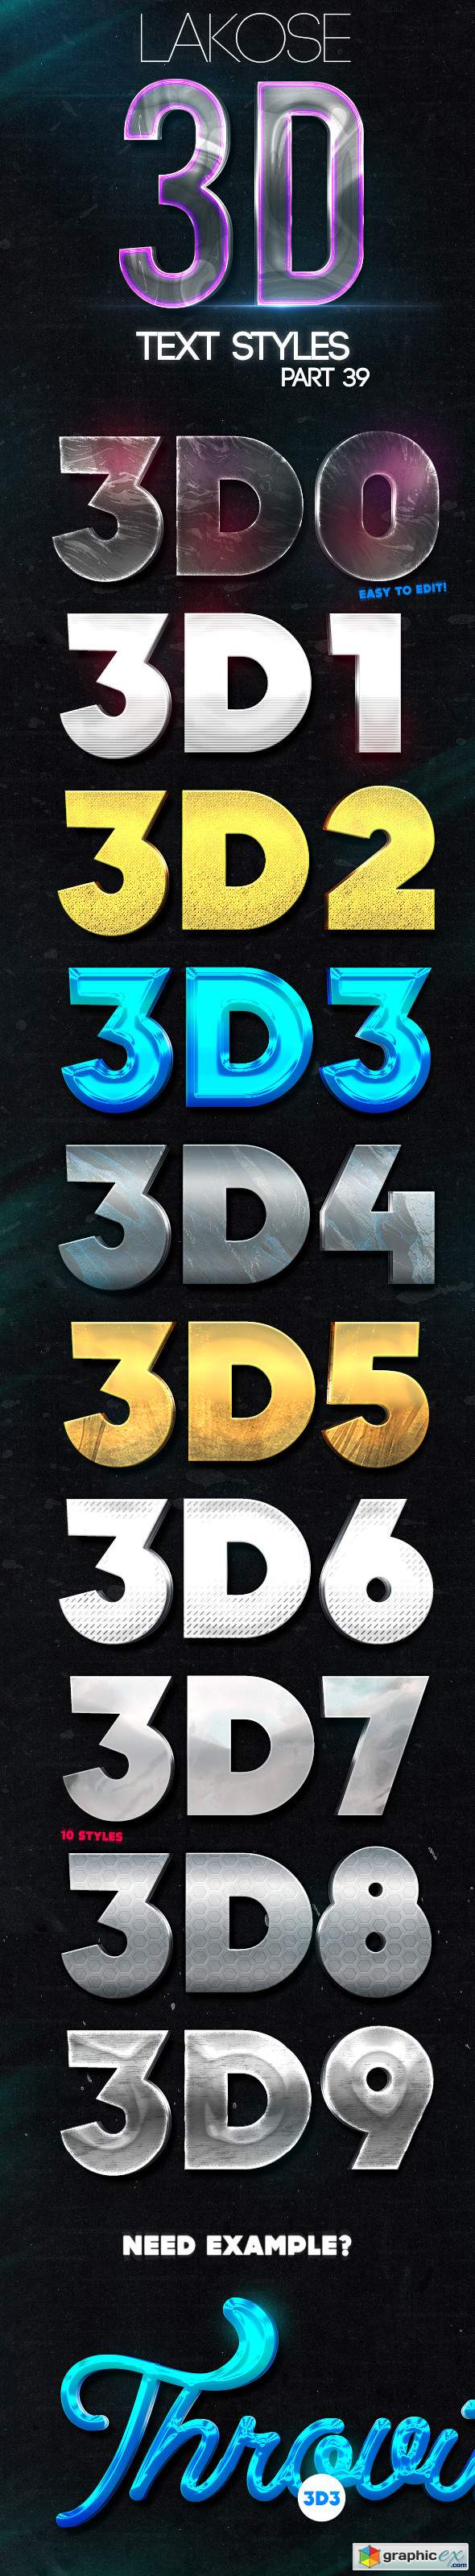 Lakose 3D Text Styles Part 39